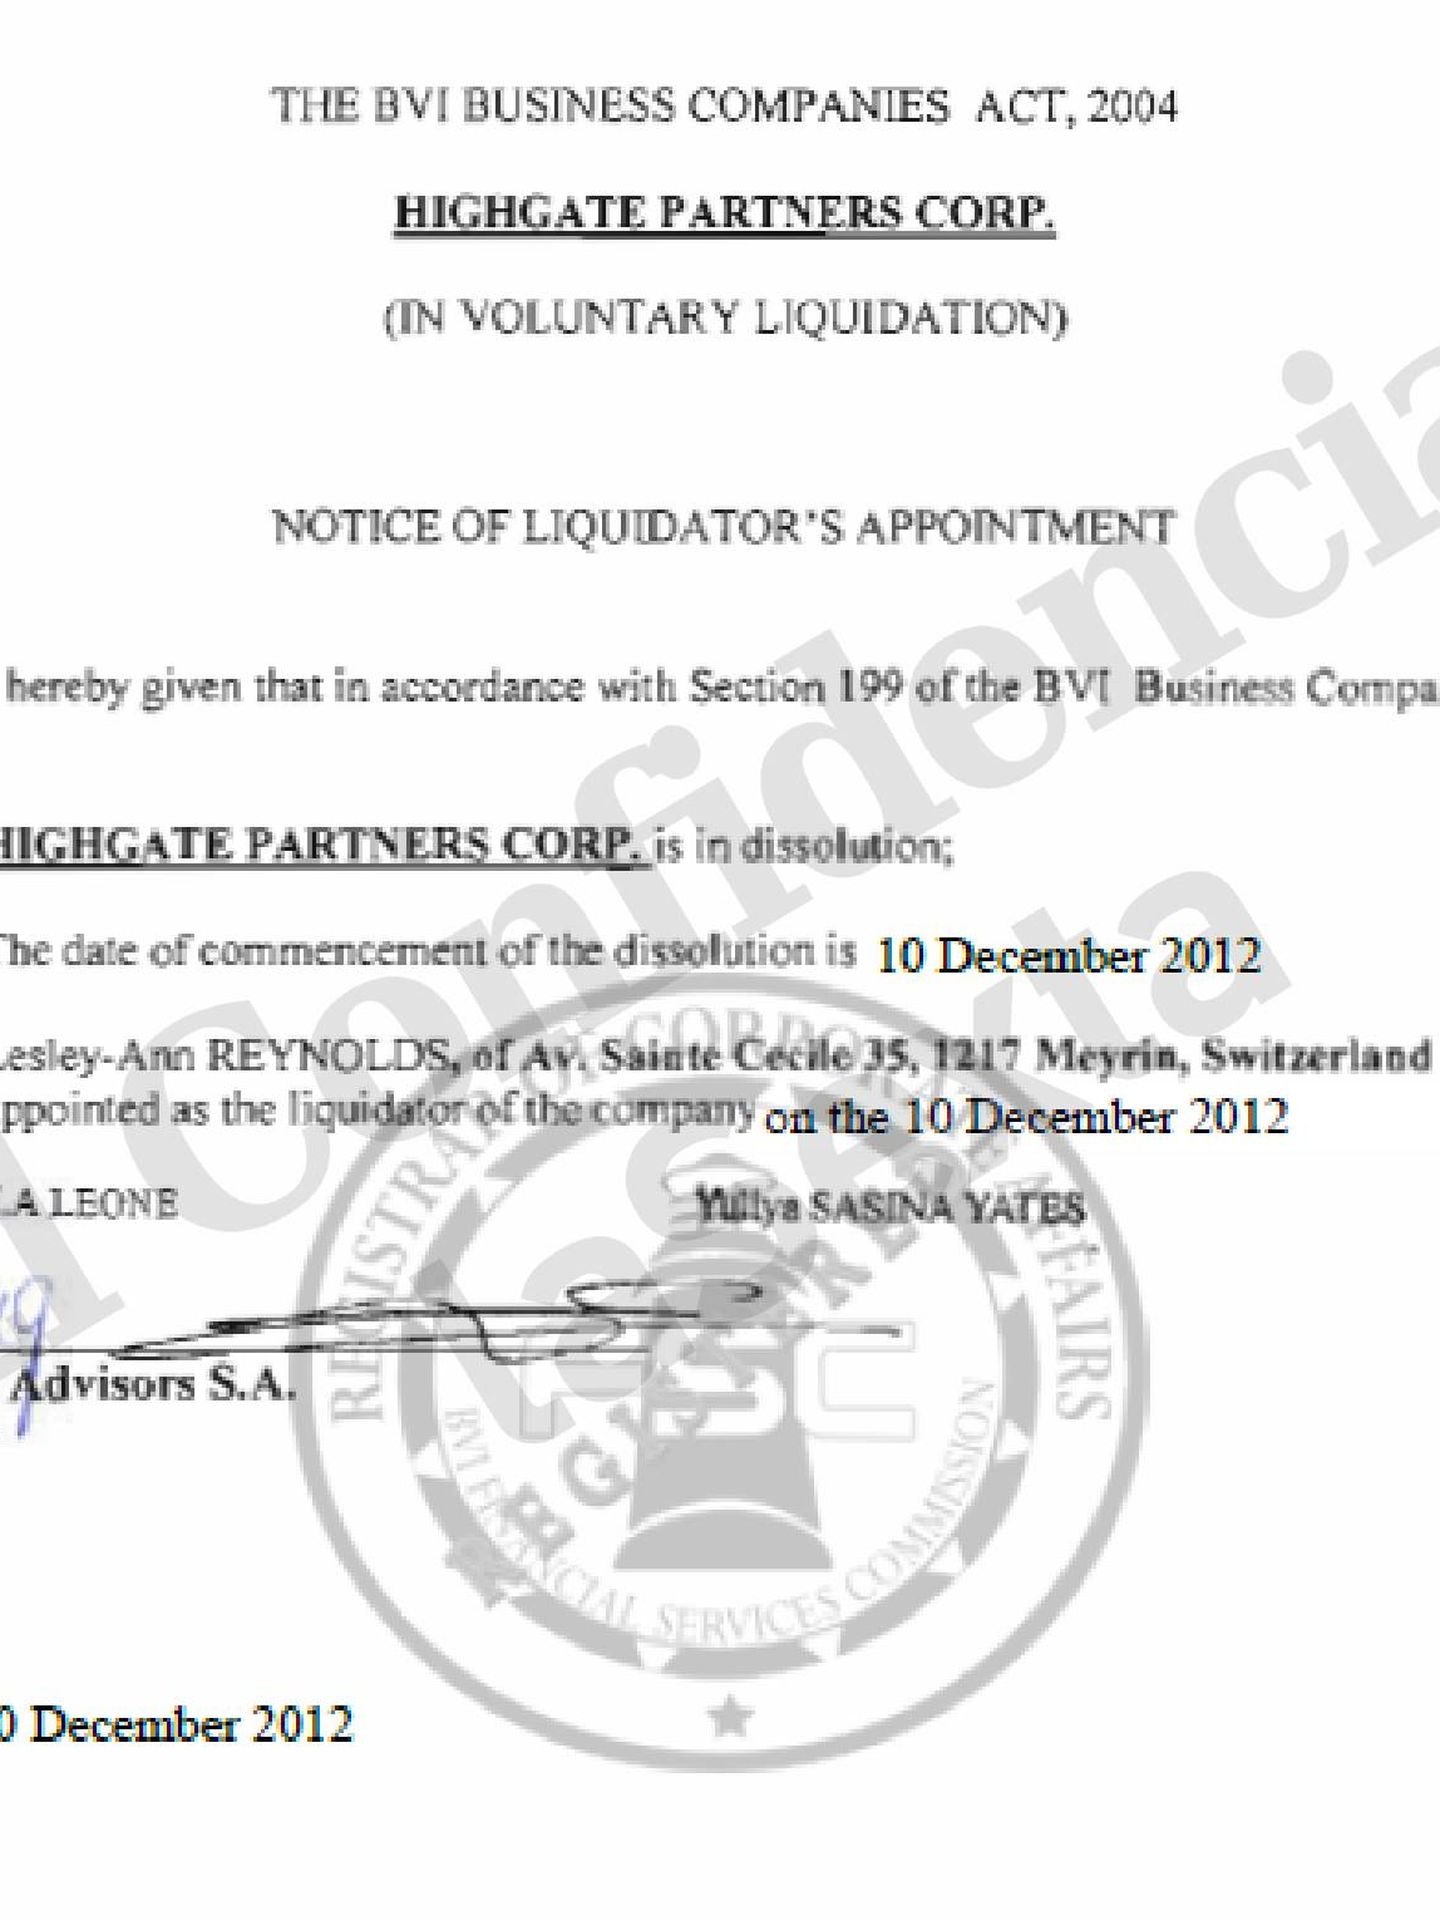 Autorización legal para la liquidación de Highgate Partners Corp, firmado por la sociedad panameña Growth Advisors SA.